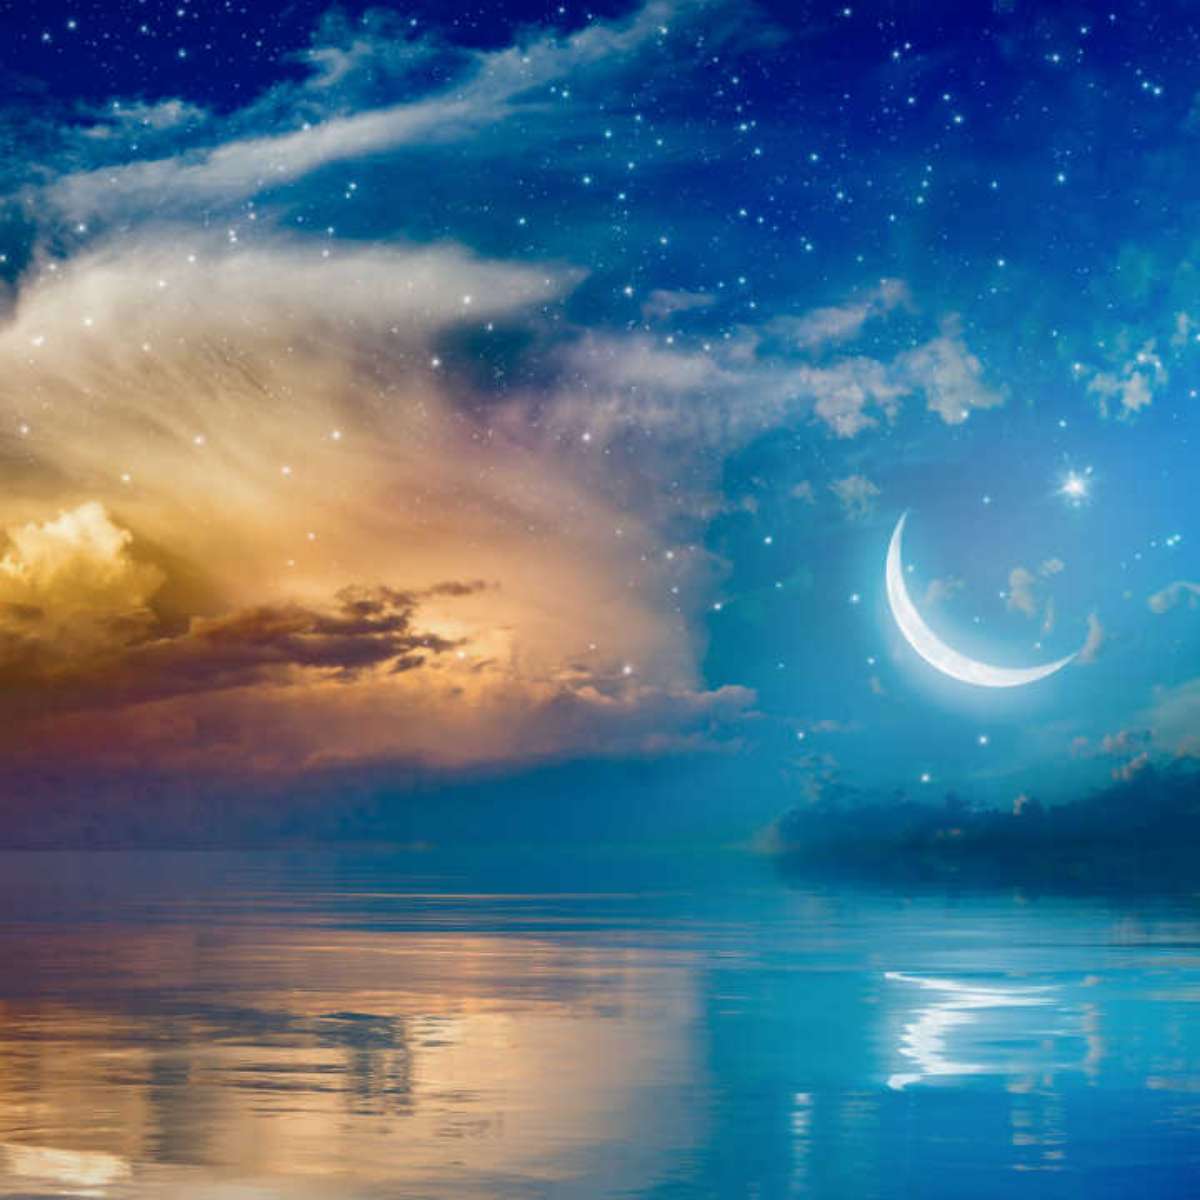  Sognare con la Luna: cosa significa?